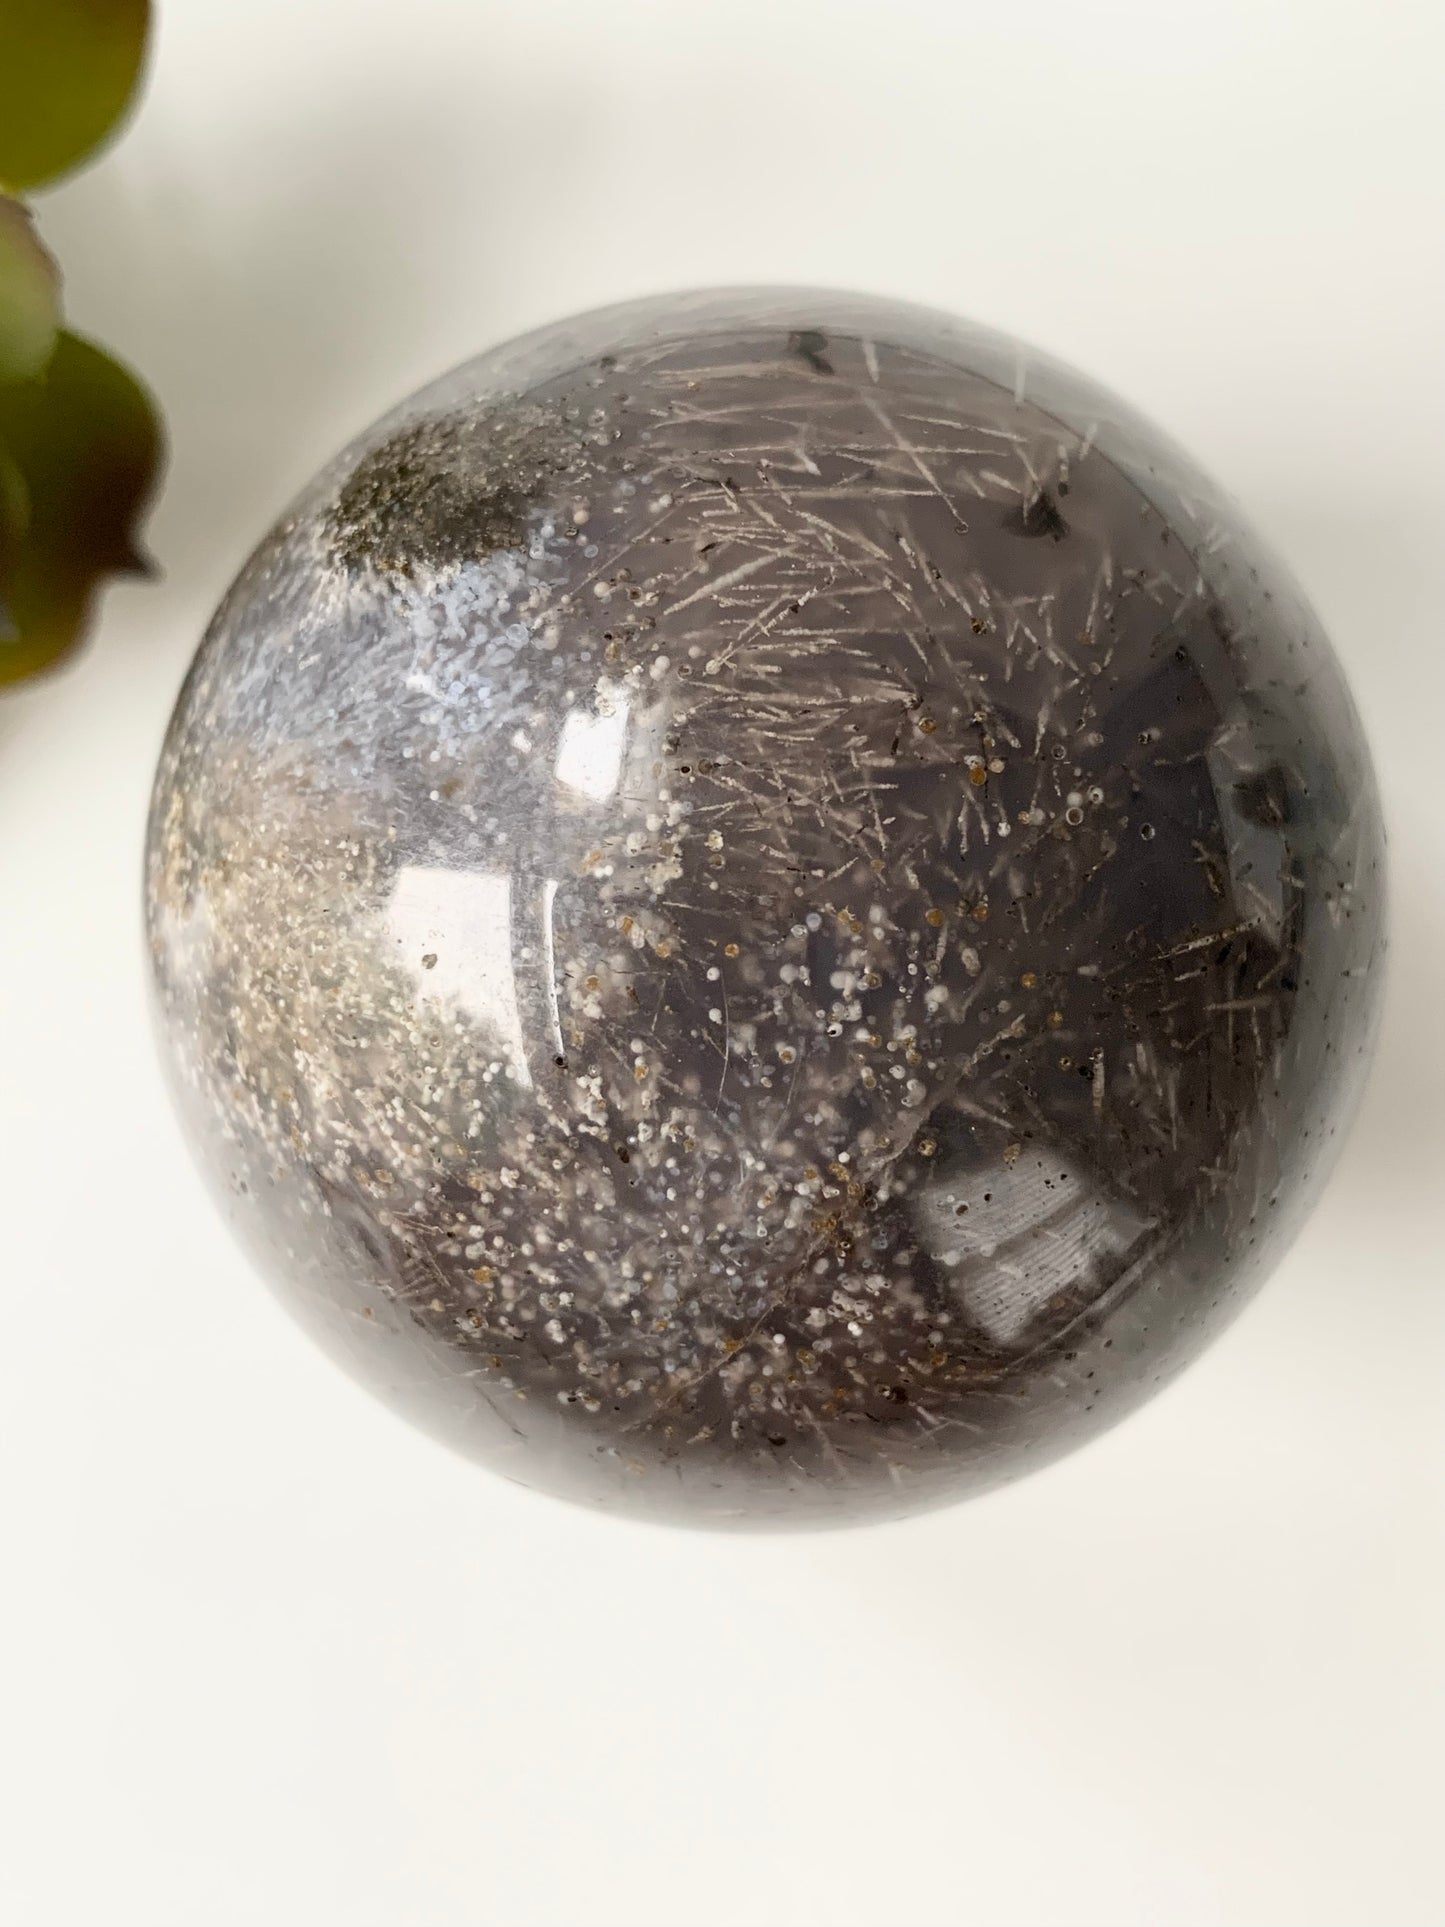 Sagenite Agate Sphere, 60mm